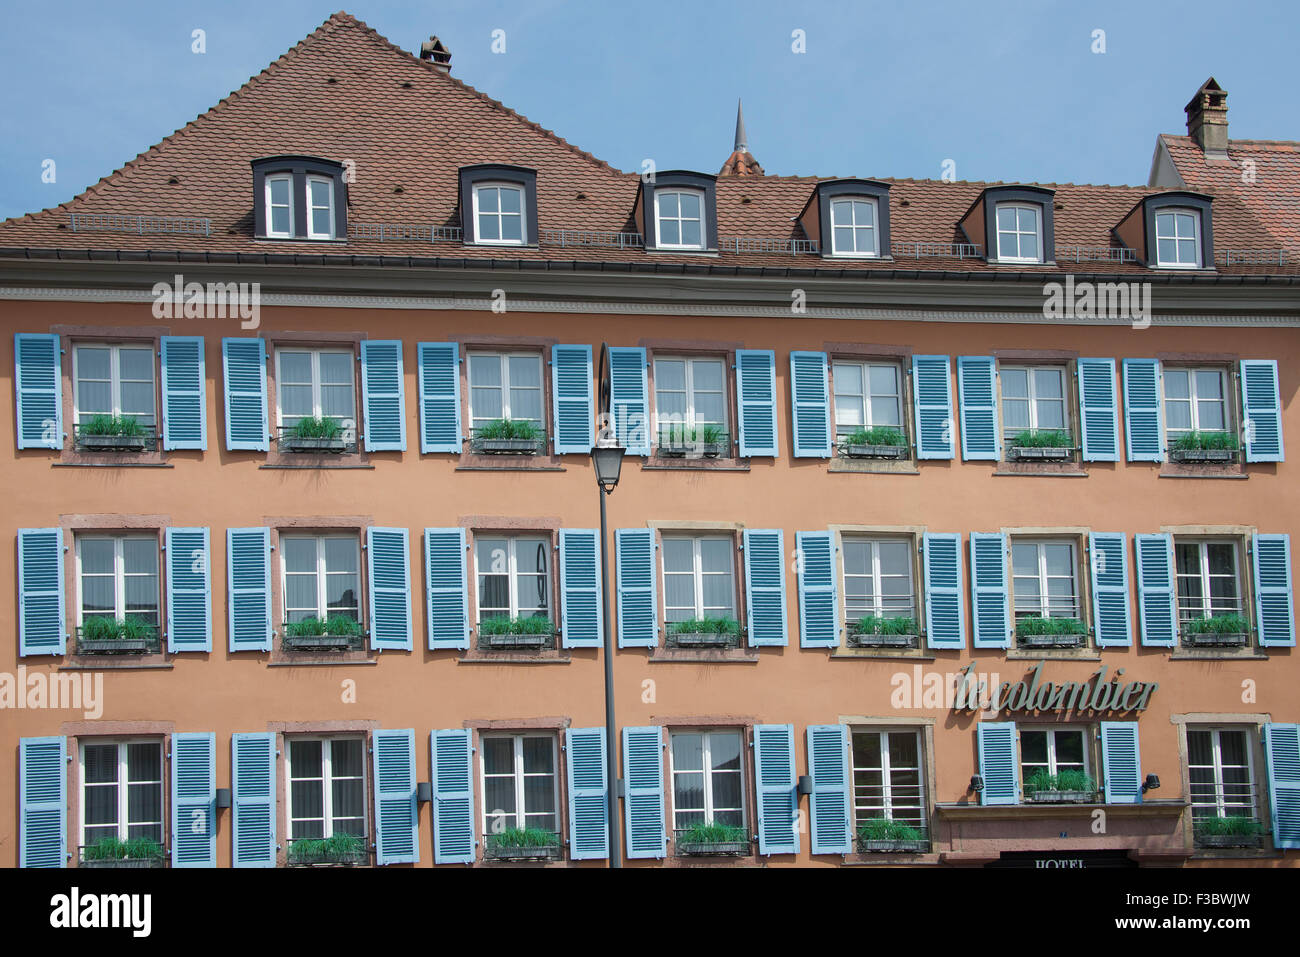 Hôtel traditionnel avec des fenêtres à volets bleu Petit Venise Colmar Alsace France Banque D'Images